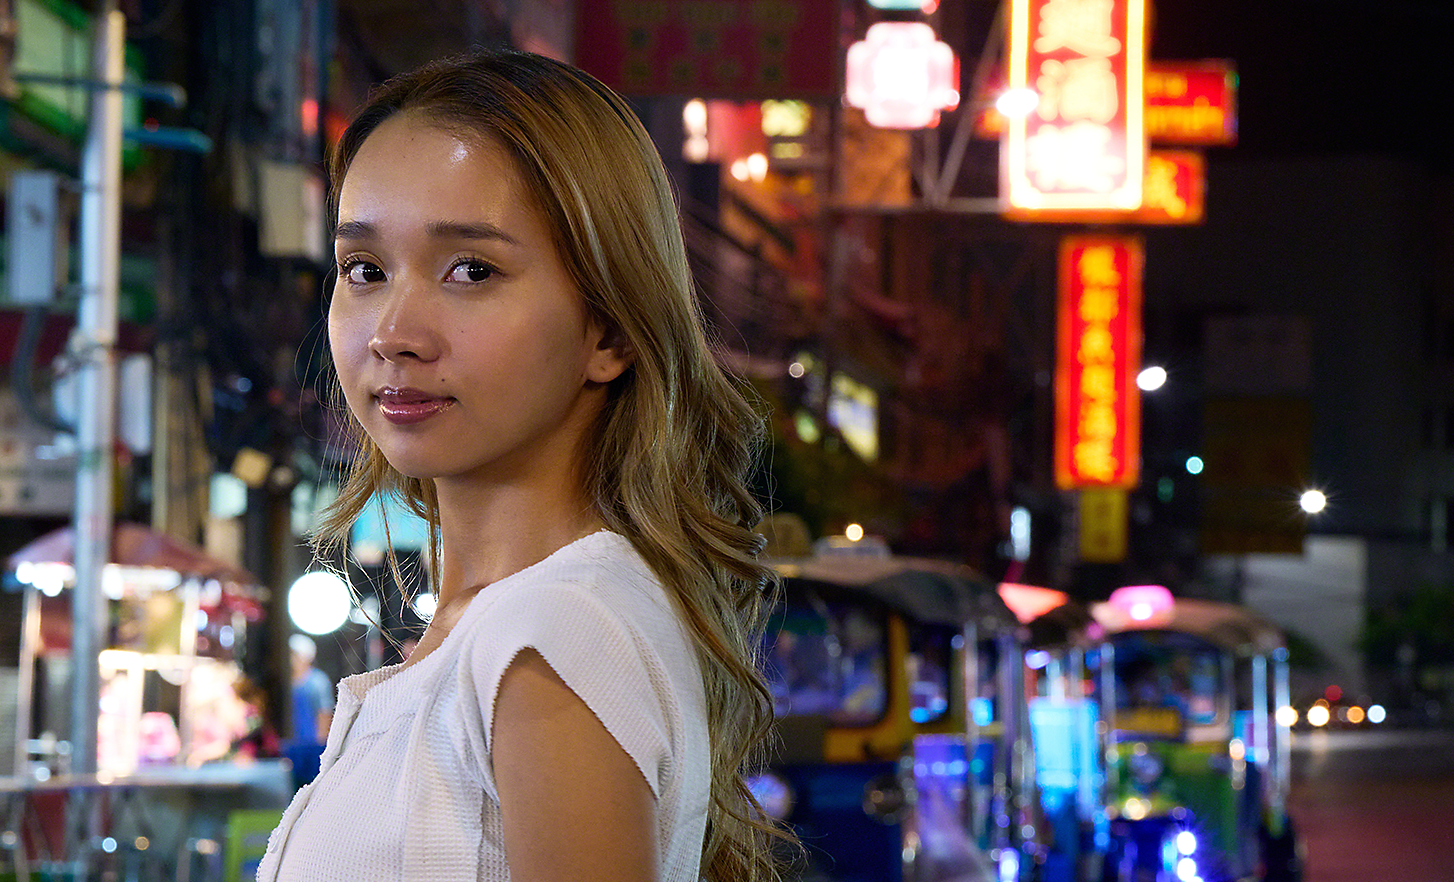 Portrait einer jungen Frau in einer belebten Straße in der Stadt bei Nacht